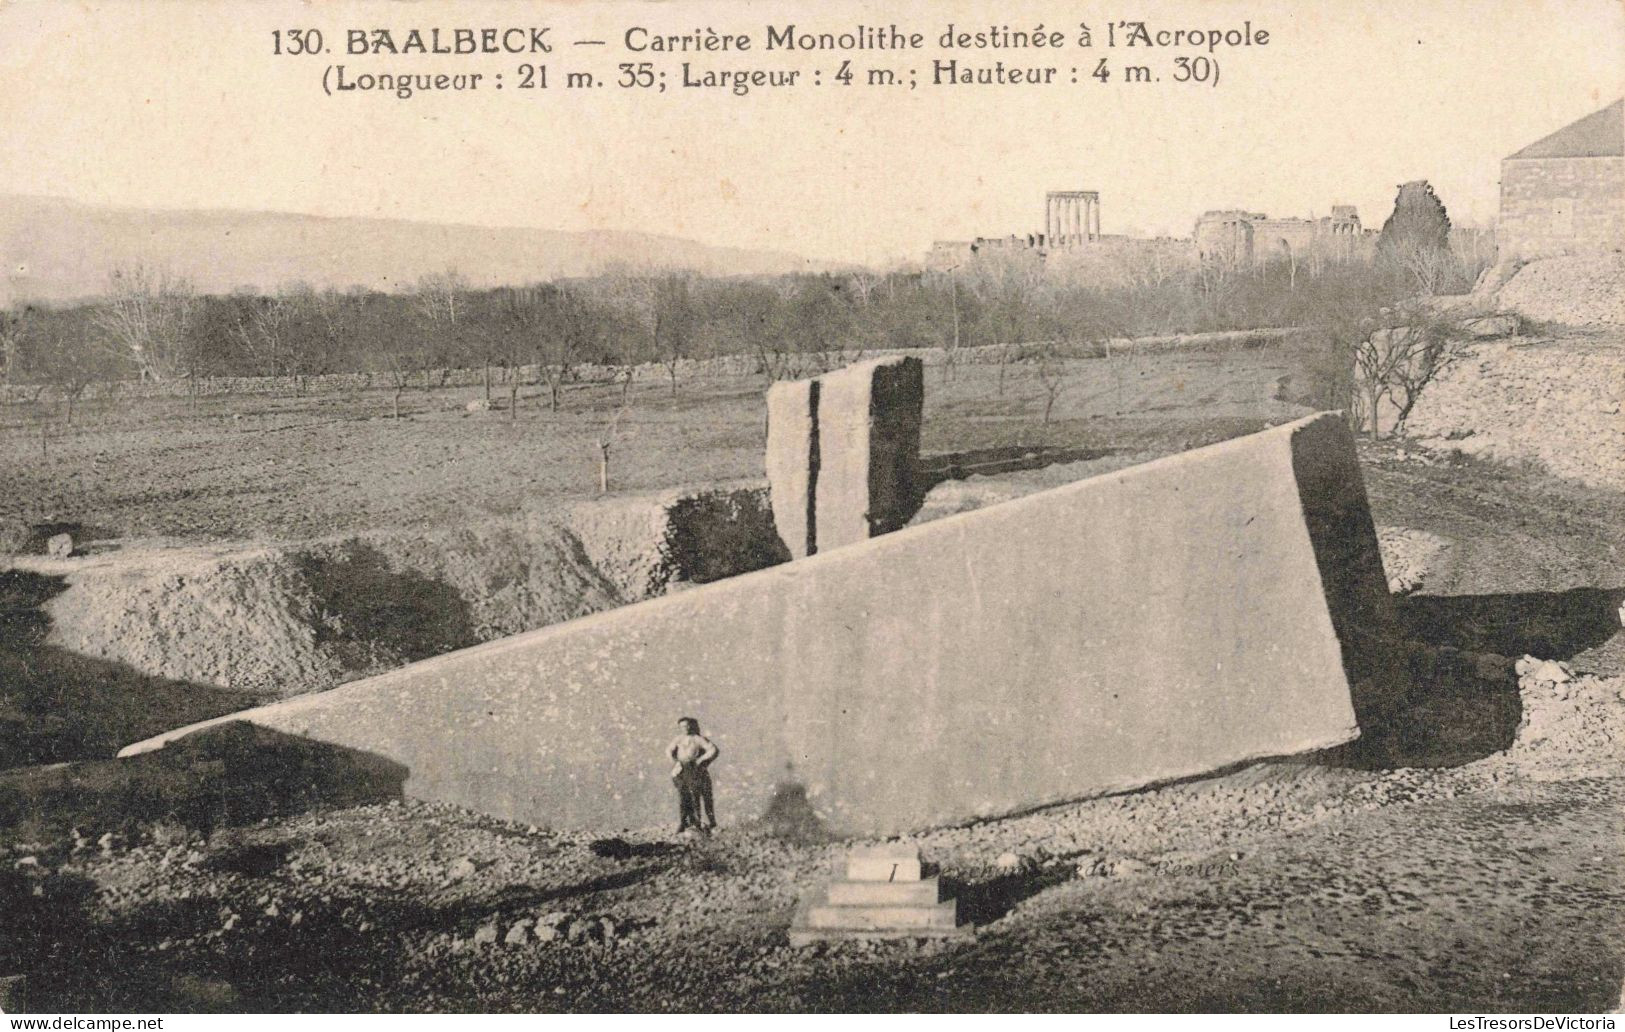 LIBAN - Baalbeck - Carrière Monolithe Destinée à L'Acropole - Carte Postale Ancienne - Lebanon